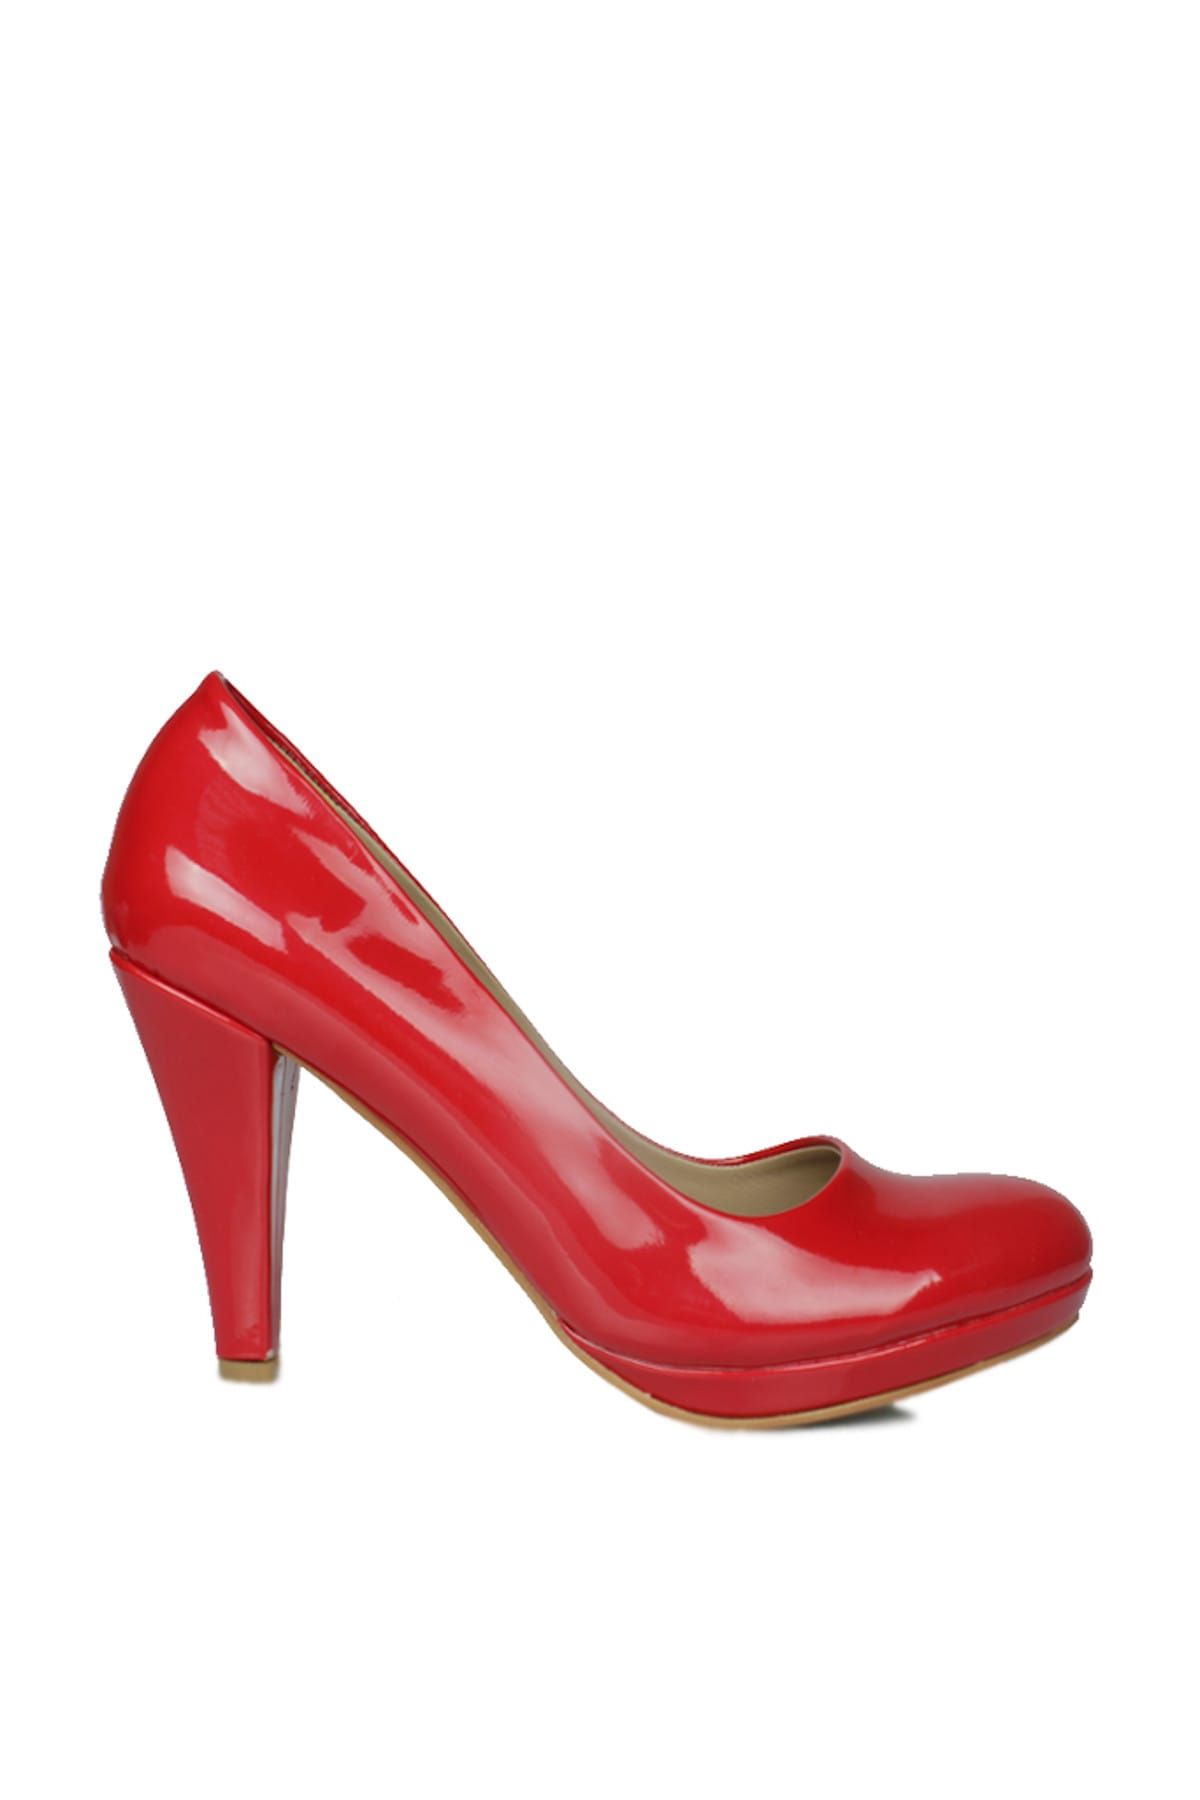 Fitbas Kırmızı Kadın Topuklu Ayakkabı ER_580401_559